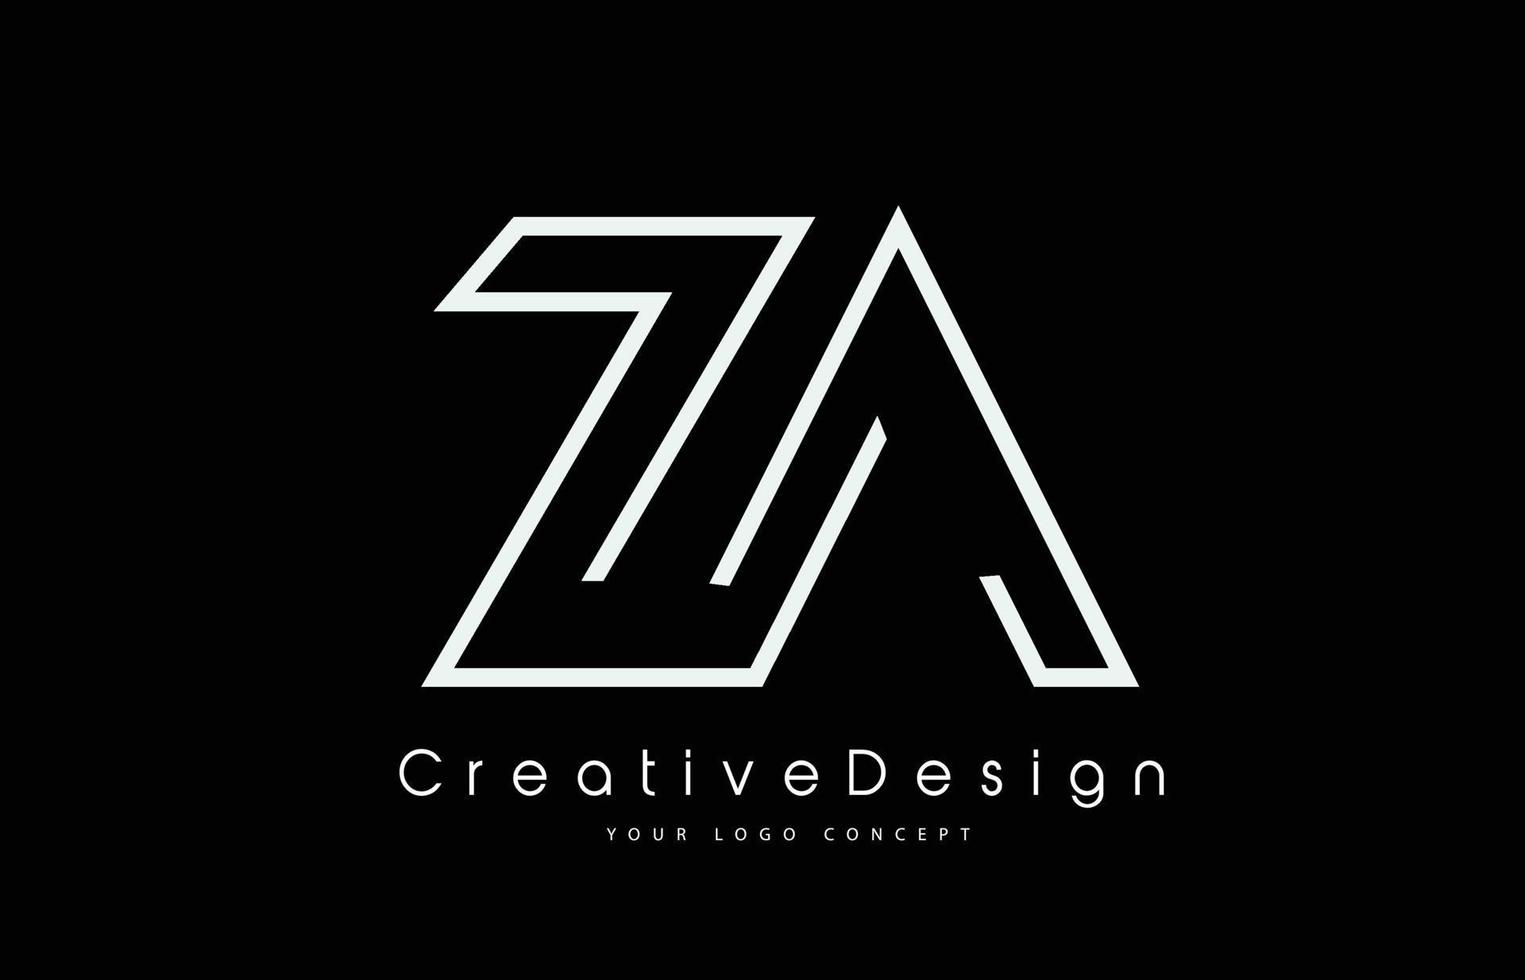 création de logo de lettre za za en couleurs blanches vecteur